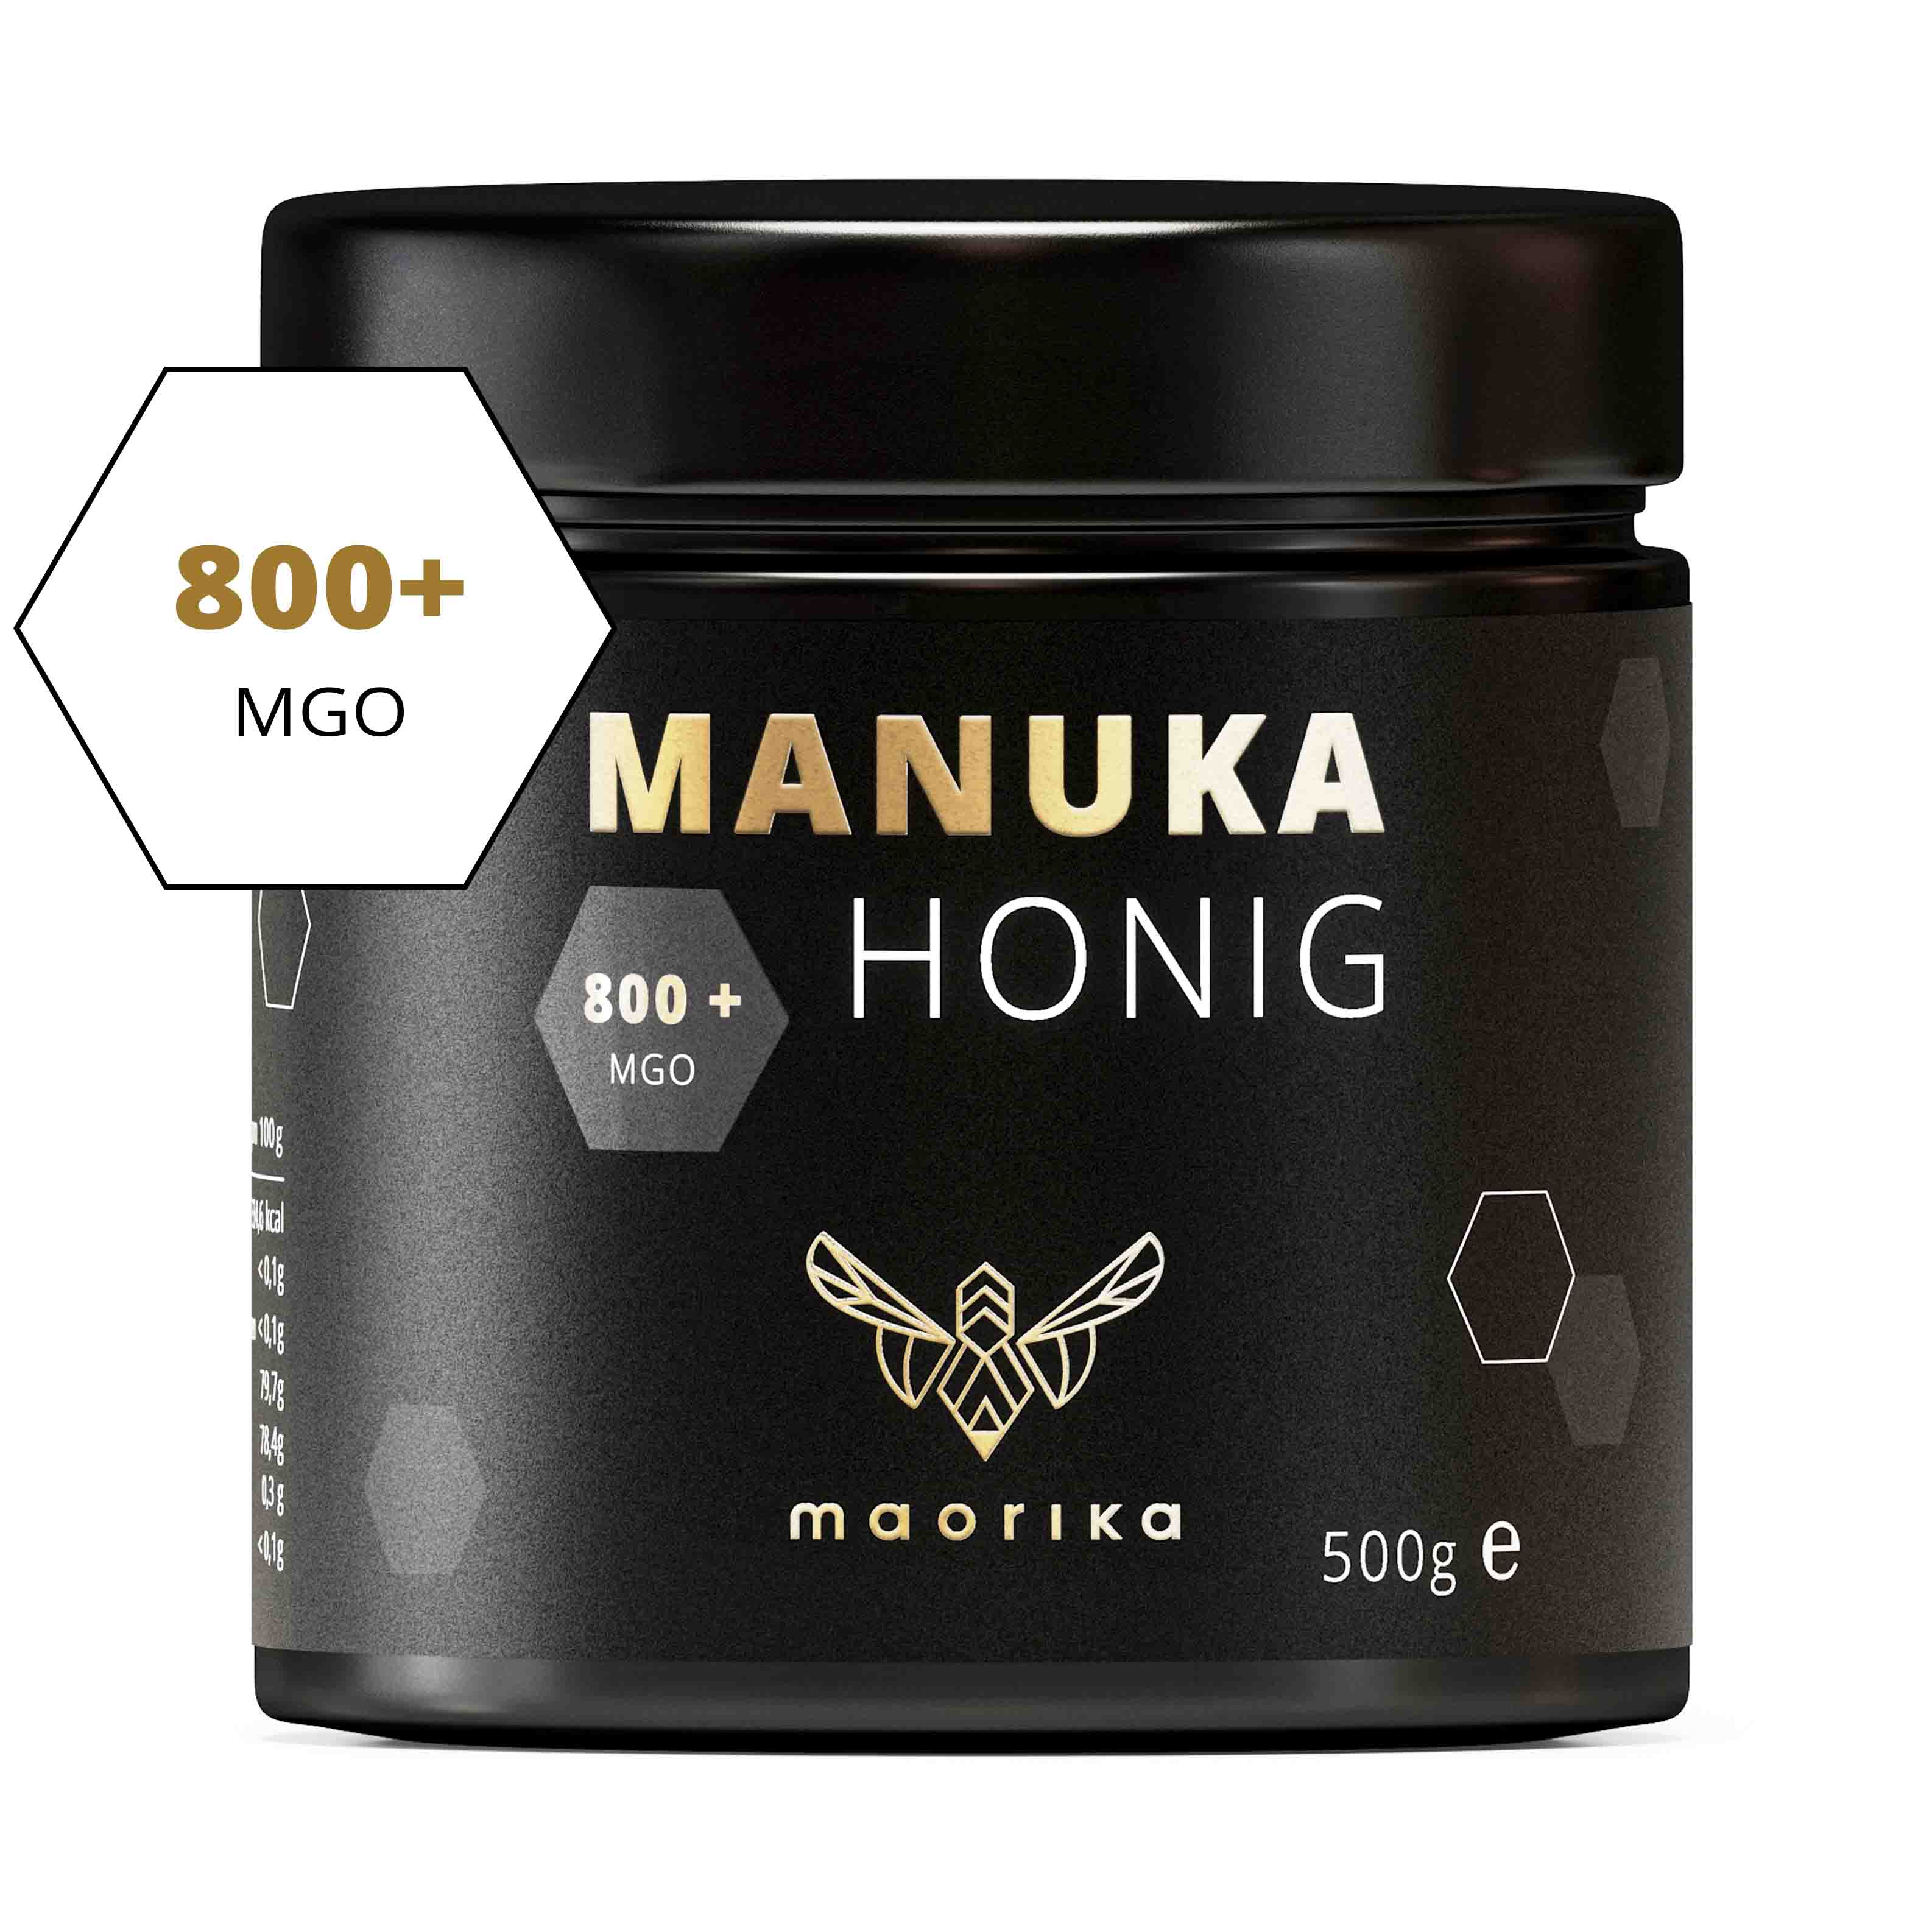 Manuka Honig MGO 800+